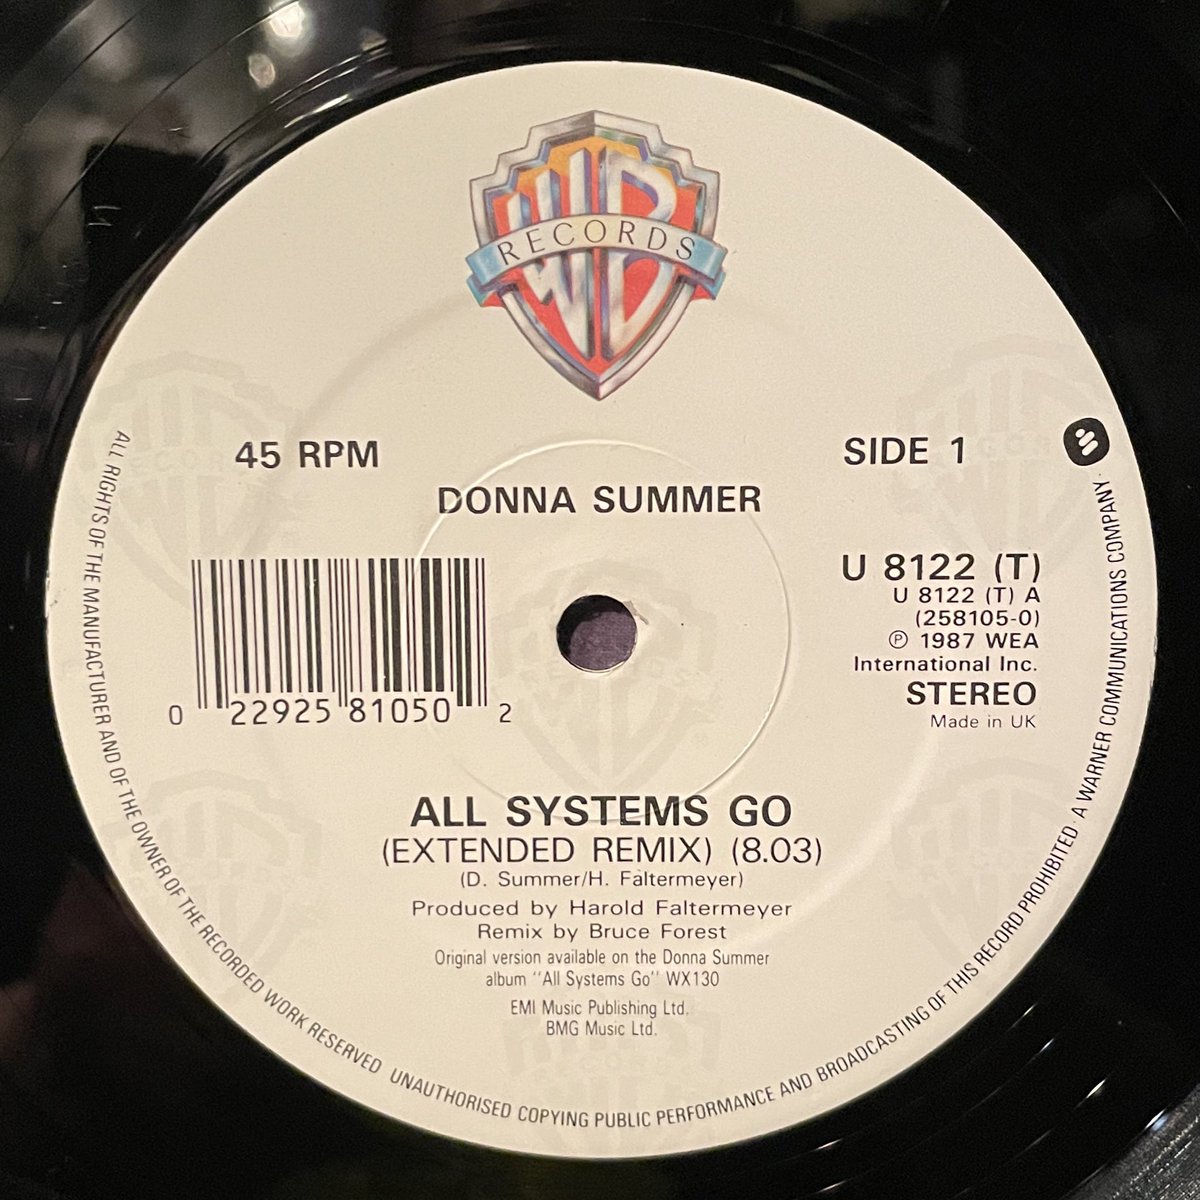 ほな12いこか
DONNA SUMMER / All Systems Go [’88 Warner Bros. Records --- U 8122 T]
#DonnaSummer #AllSystemsGo #HaroldFaltermeyer #listeningbar #vinylbar #musicbar #レコードバー #mhc17052024
youtube.com/watch?v=9SAljx…